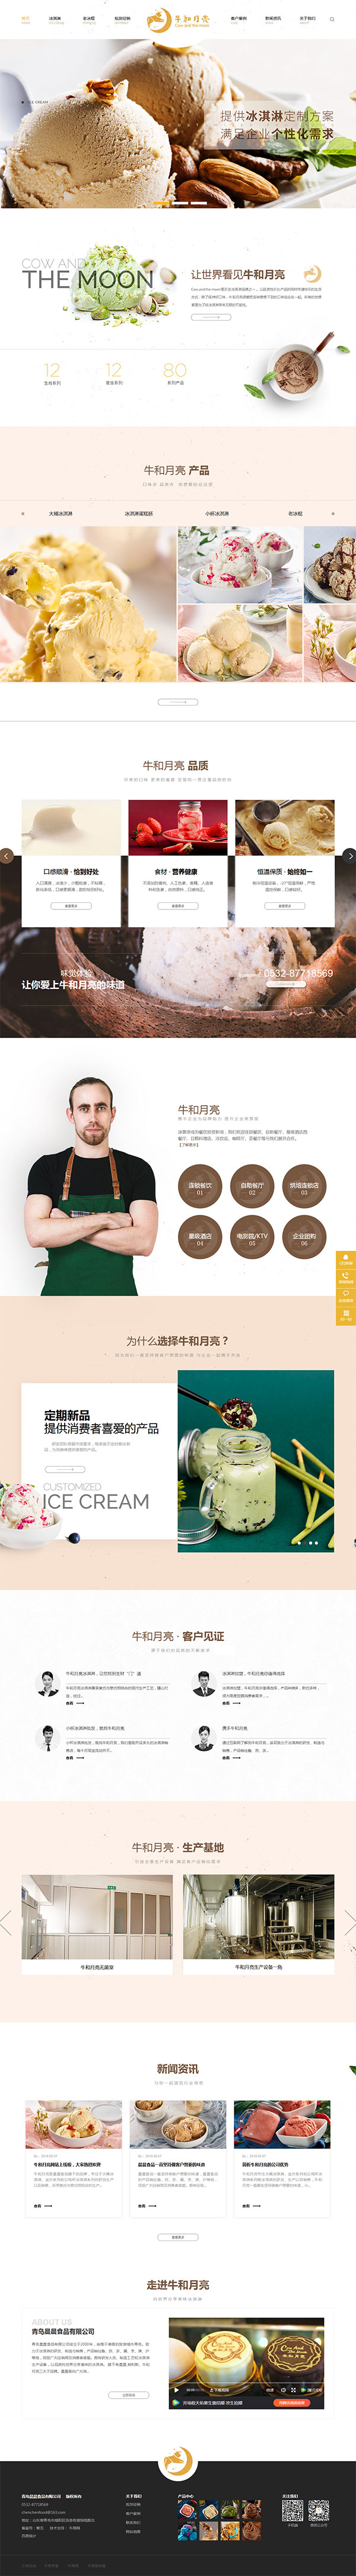 青岛晨晨食品旗下品牌牛和月亮-营销型网站首页